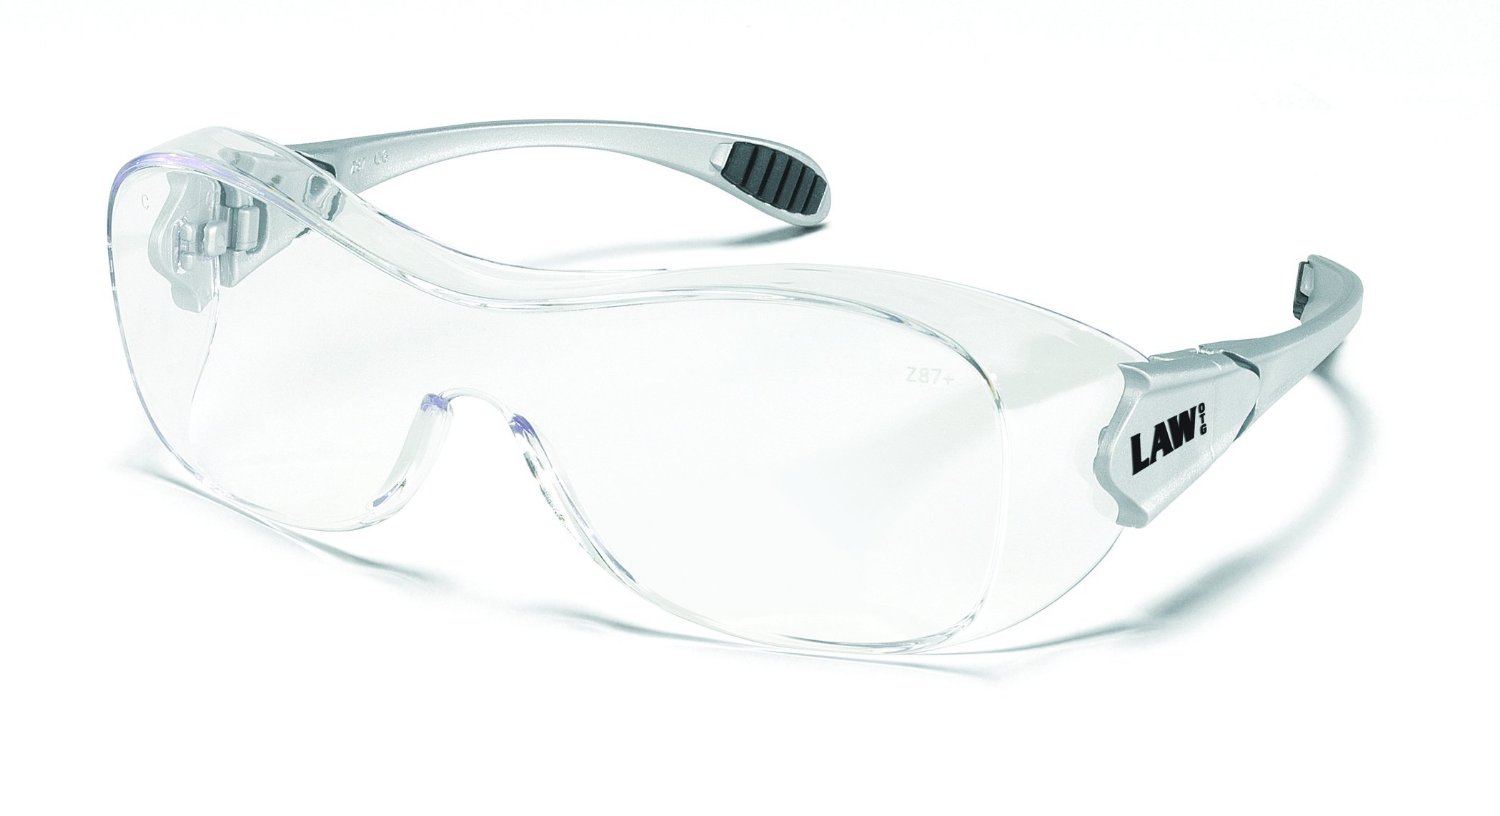 Crews OG110AF Law Over Glasses Clear Anti-Fog Safety Glasses with Hybrid Black Temple Sleeve